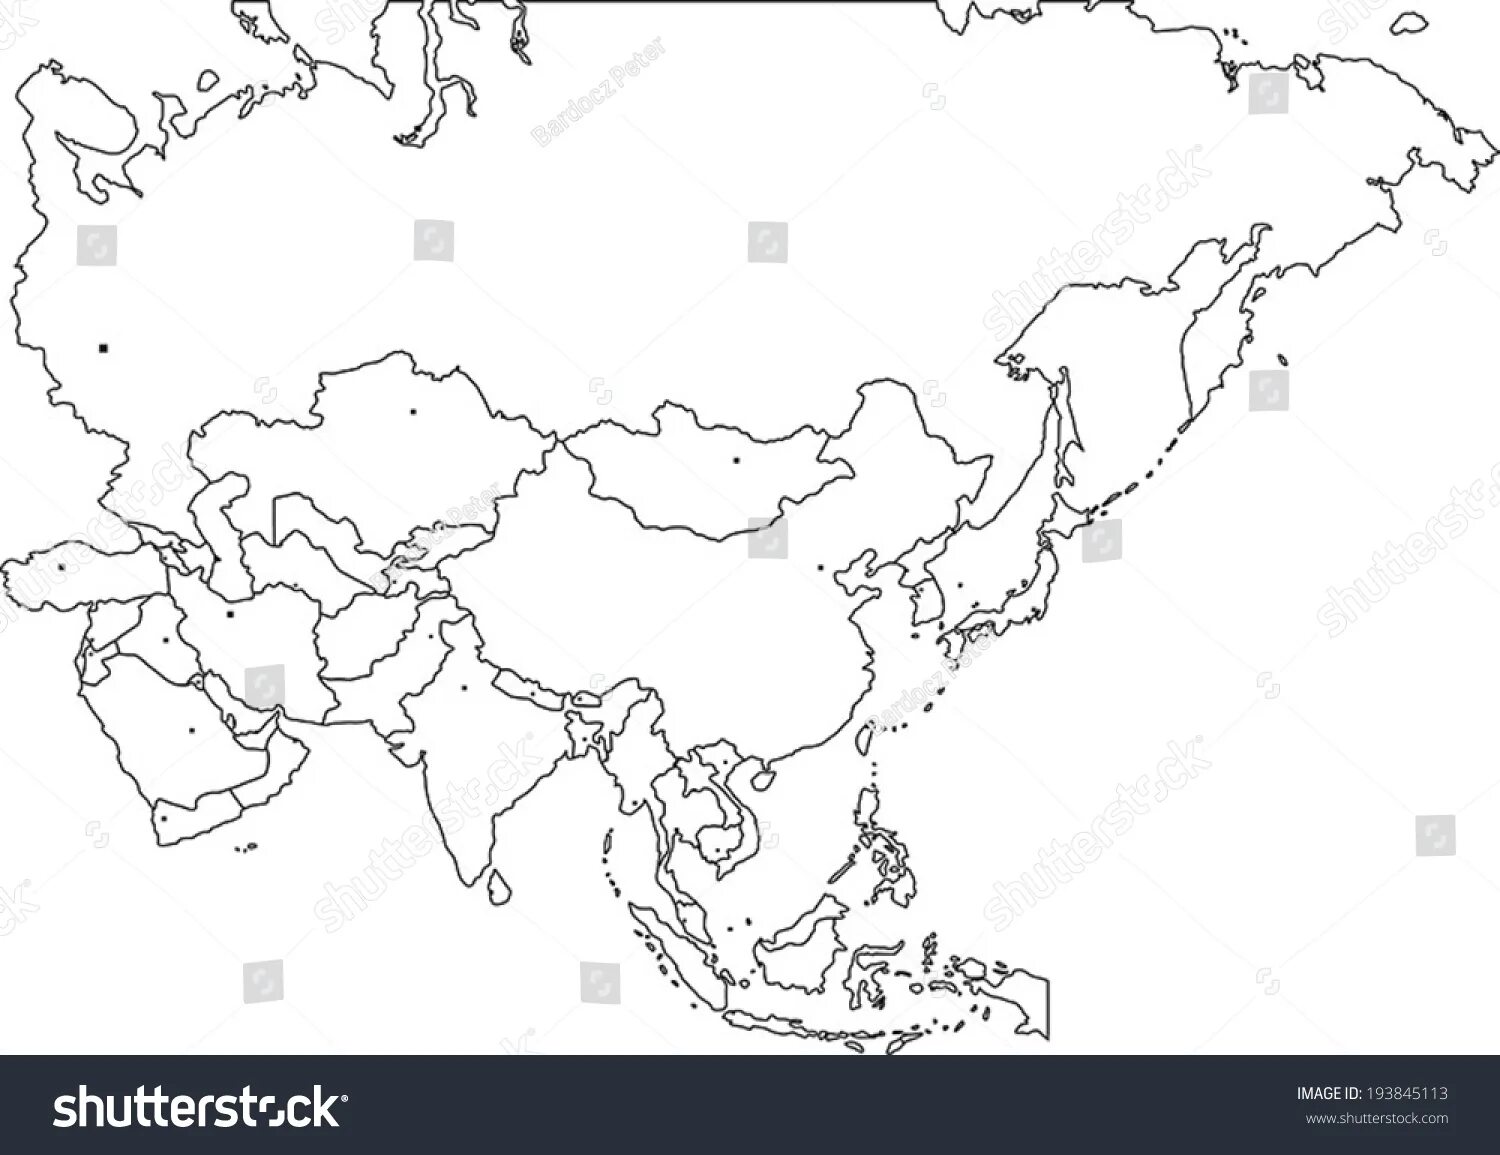 Политическая контурная карта Азии 11 класс. Контурная карта Азии для печати. Контурная карта Евразии. Пустая карта Евразии с границами государств.